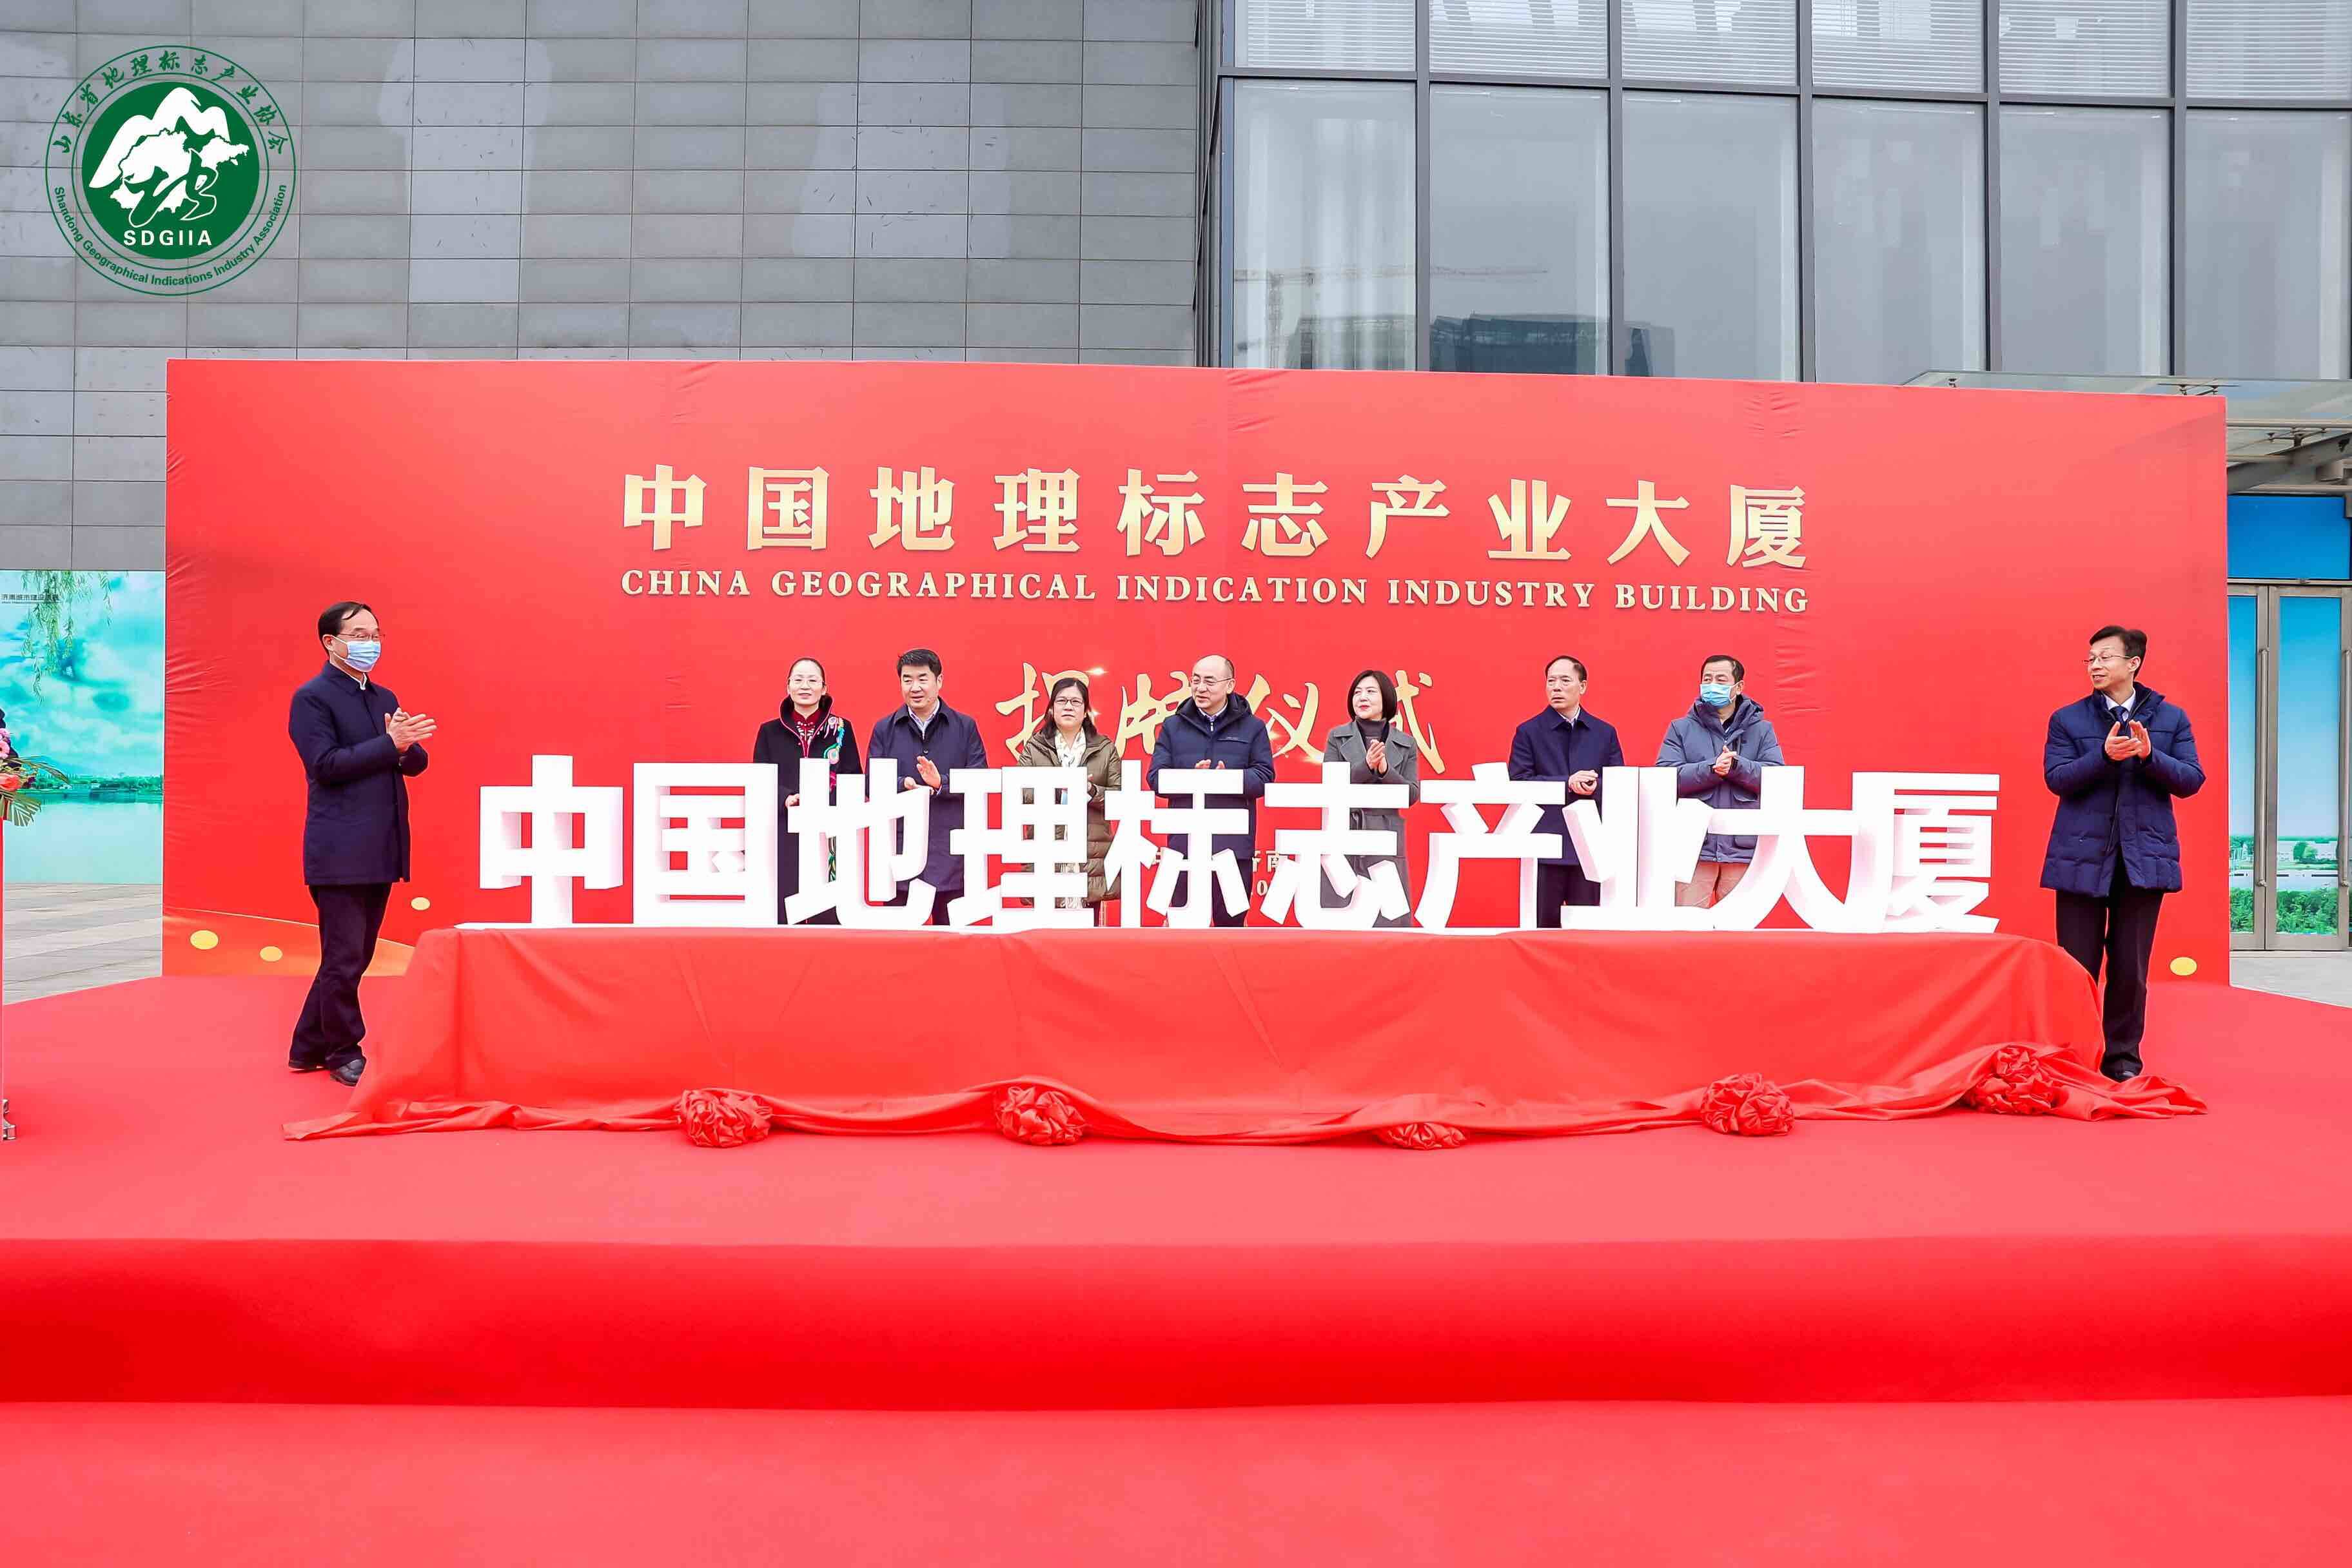 中国地理标志产业大厦在济南揭牌 将建成国家级地理标志产业集聚发展高地